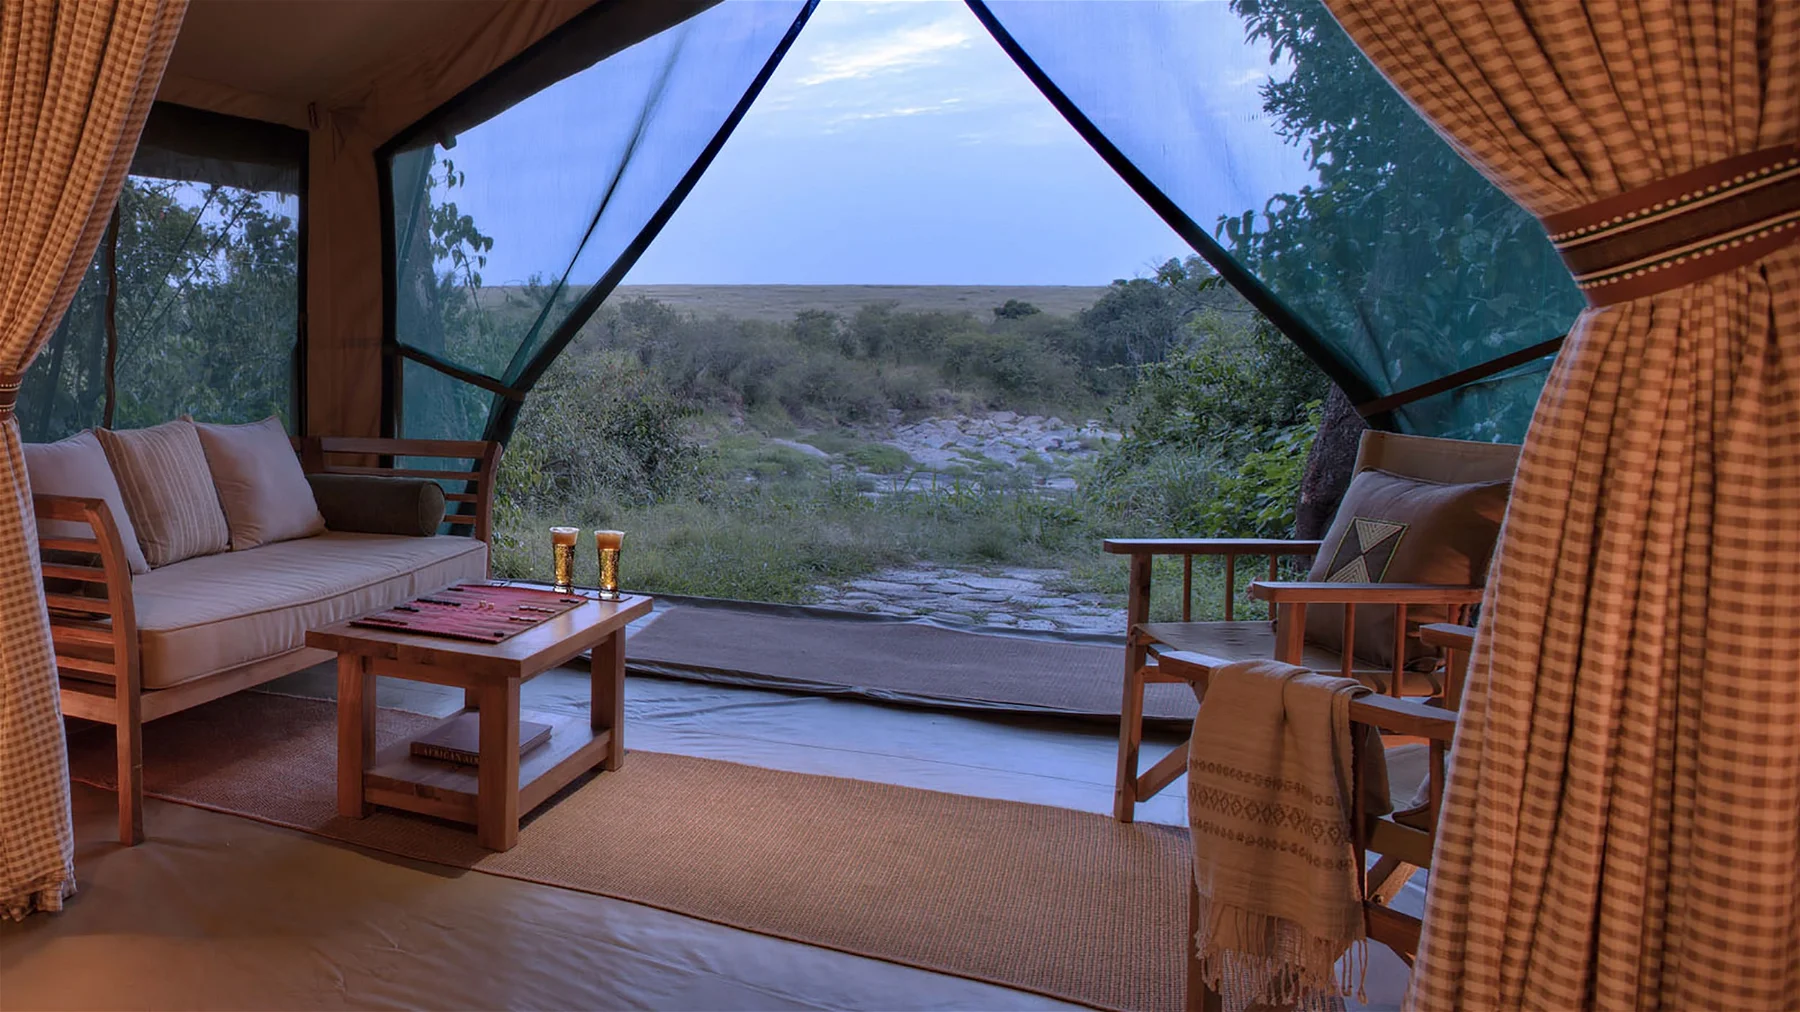 Is It Worth Visiting Maasai Mara National Reserve?